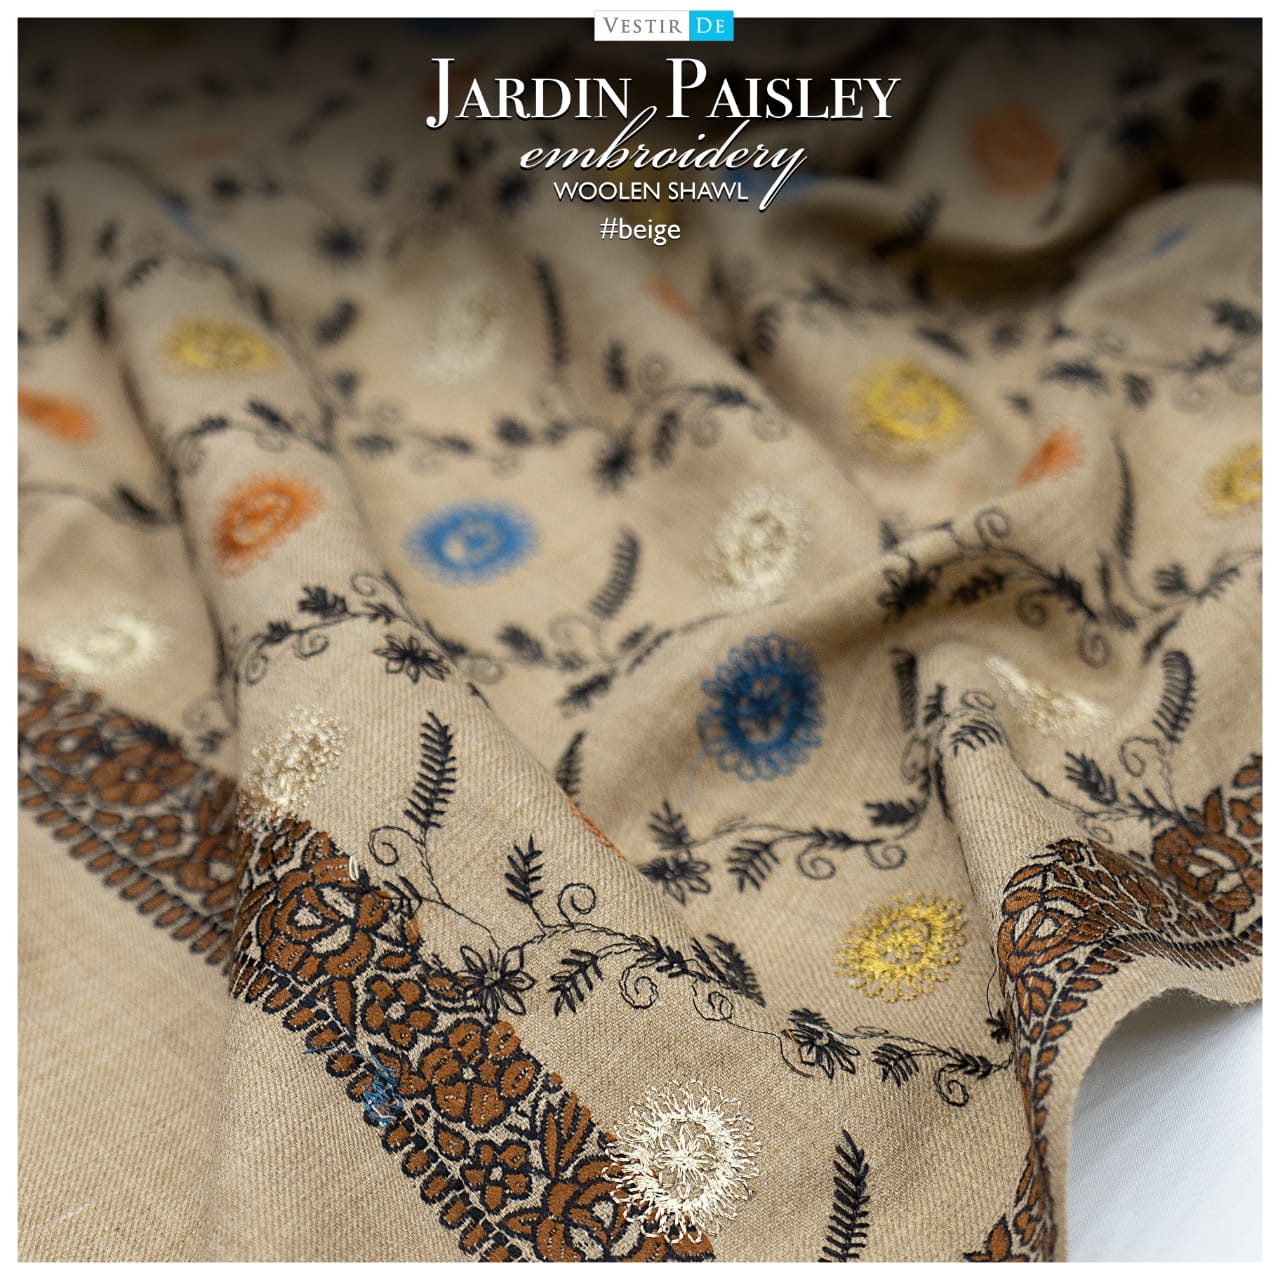 Beige Jardin Paisley Embroidery Woolen Shawl